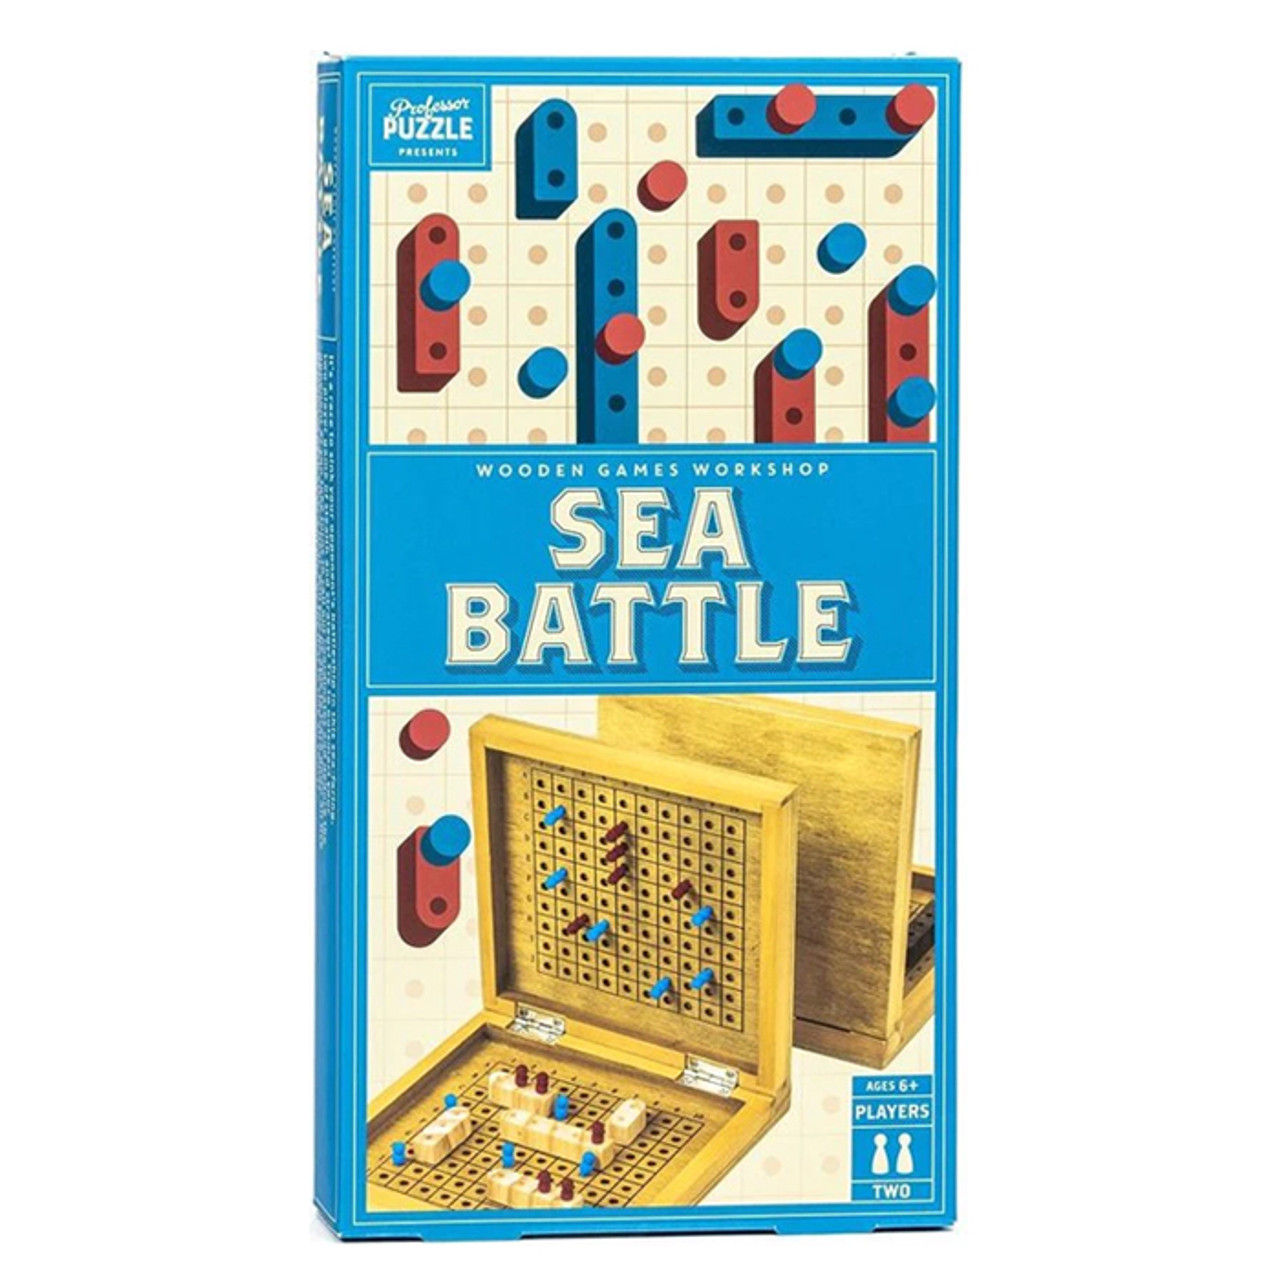 Sea Battle *in-store